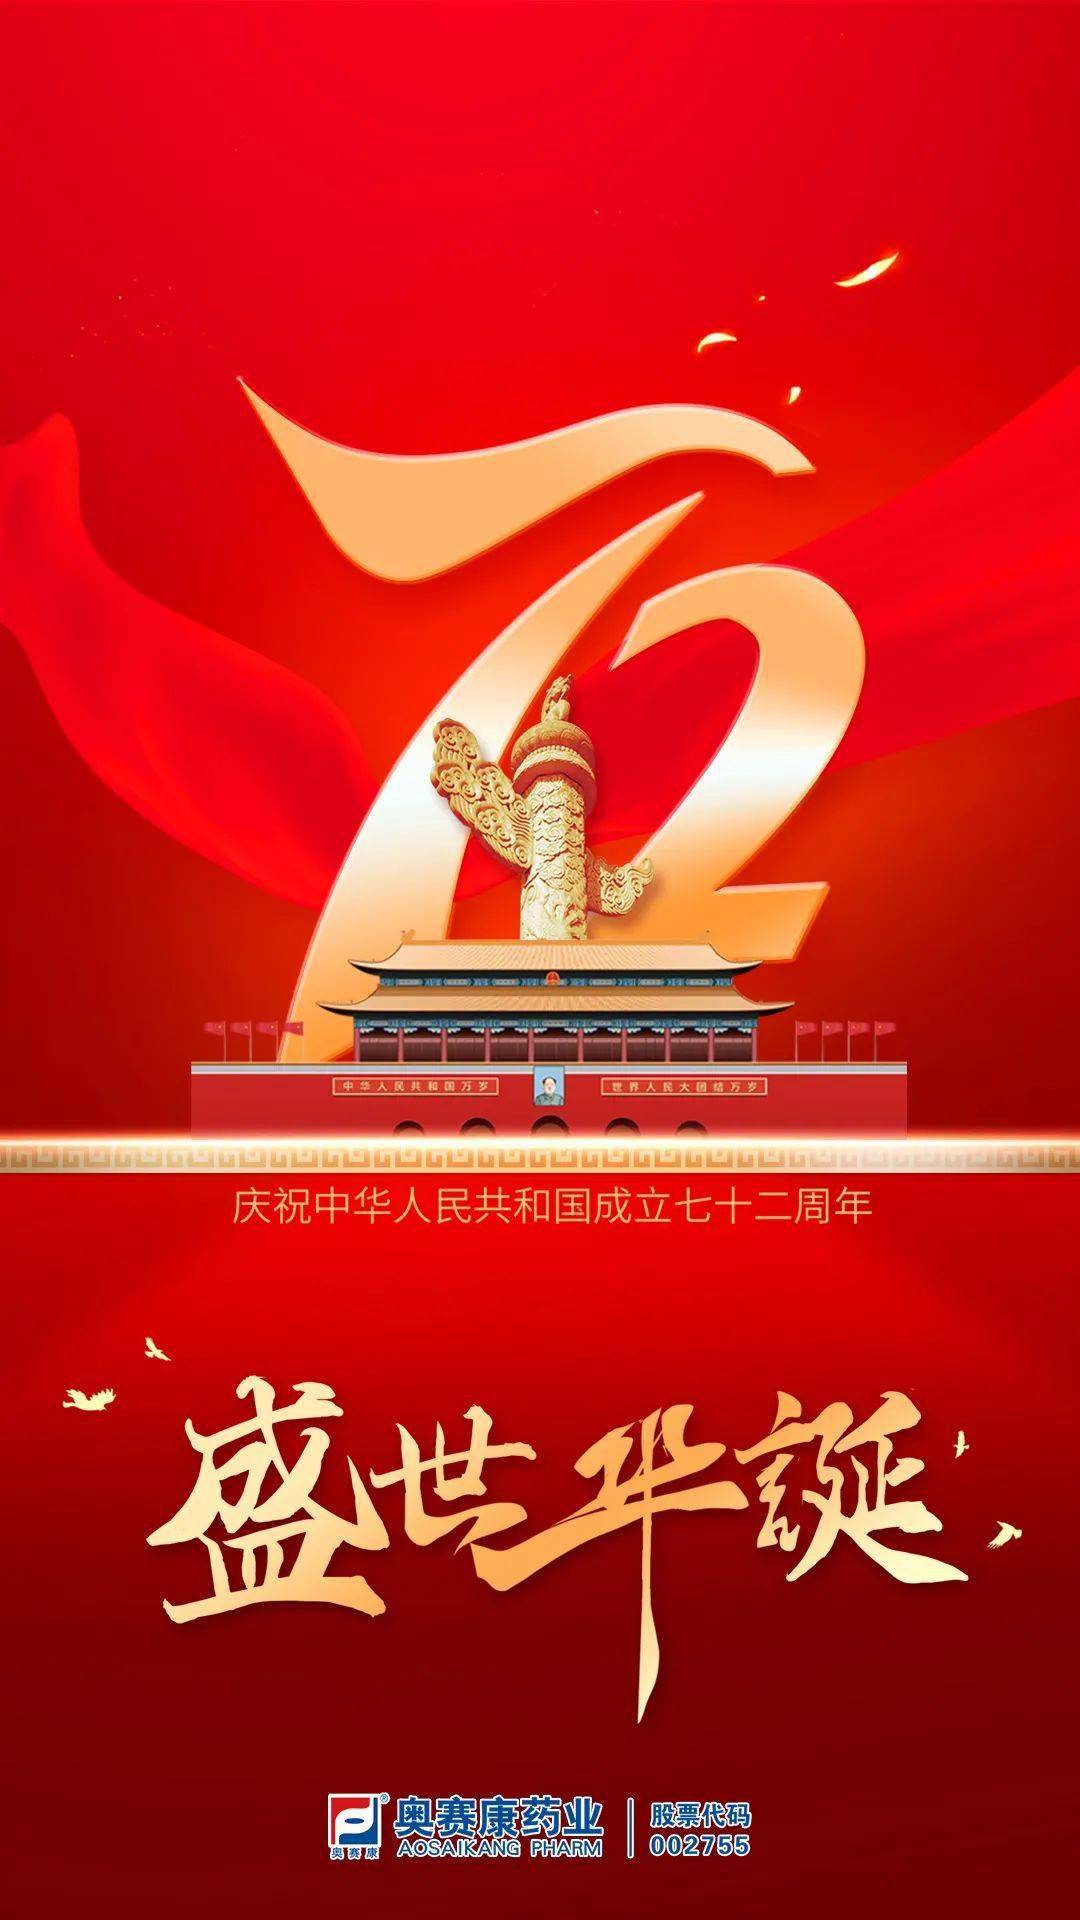 盛世华诞,普天同庆 | 奥赛康全体员工热烈庆祝中华人民共和国建国72